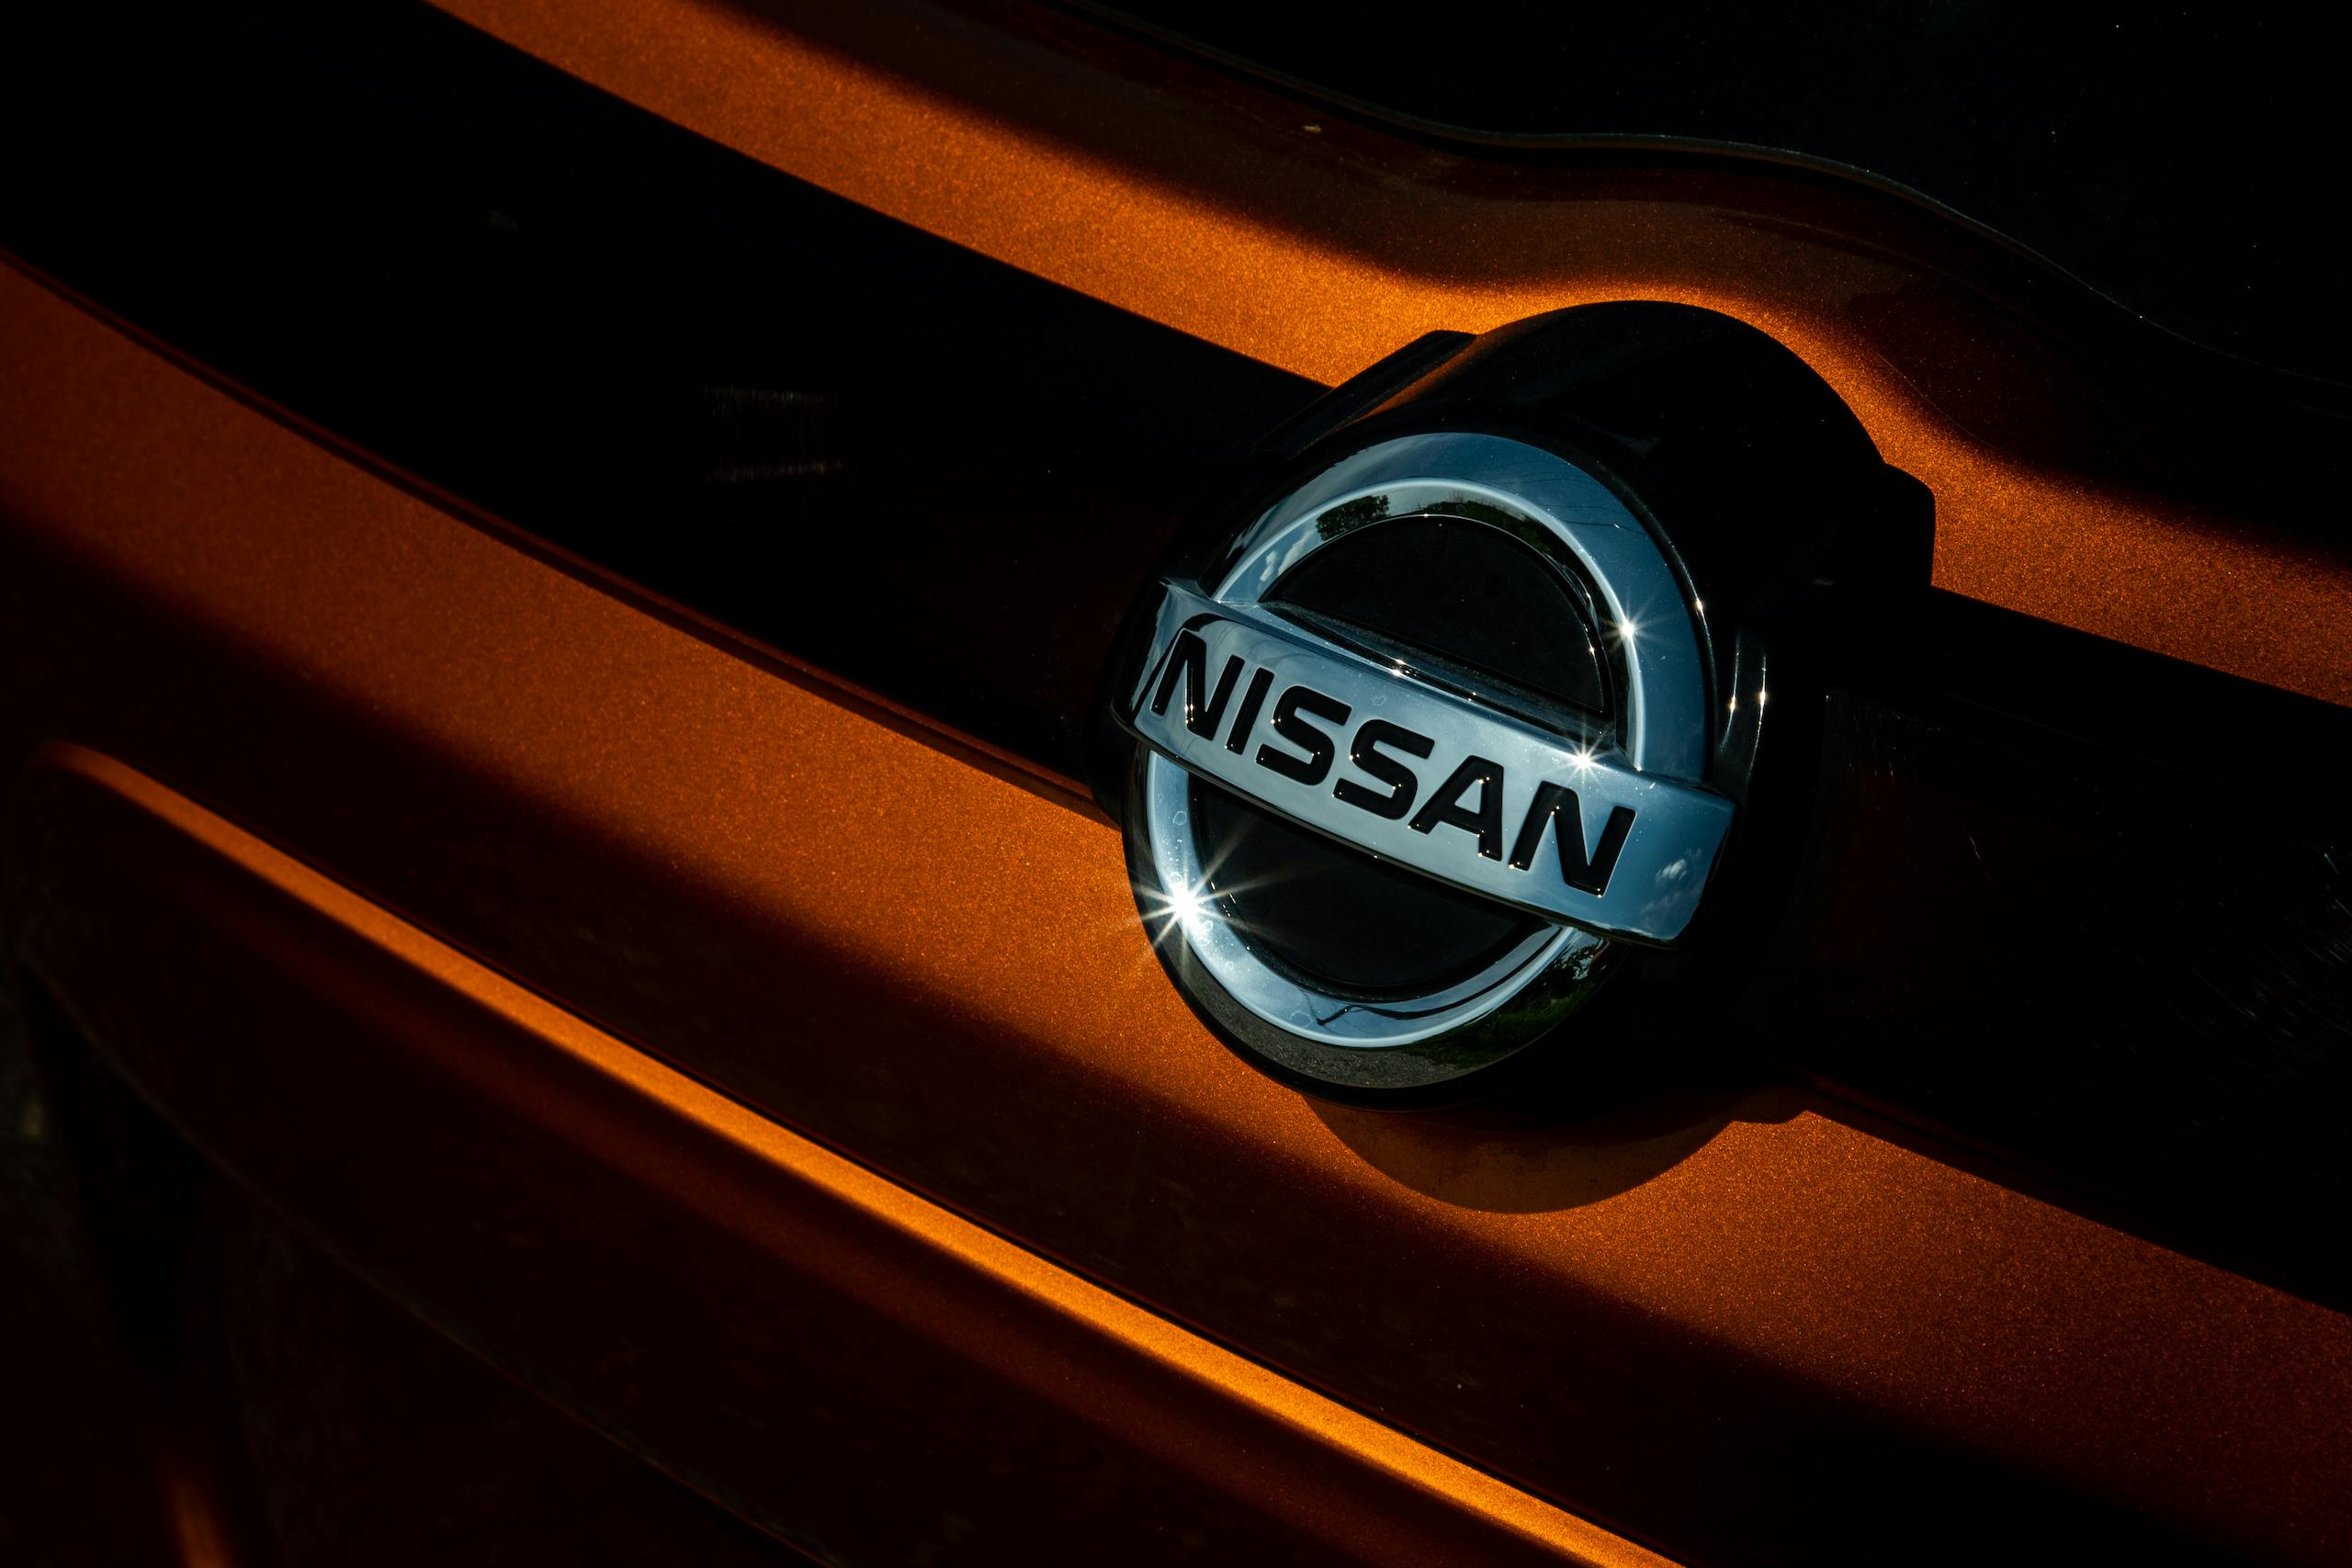 Nissan Kicks grille emblem badge